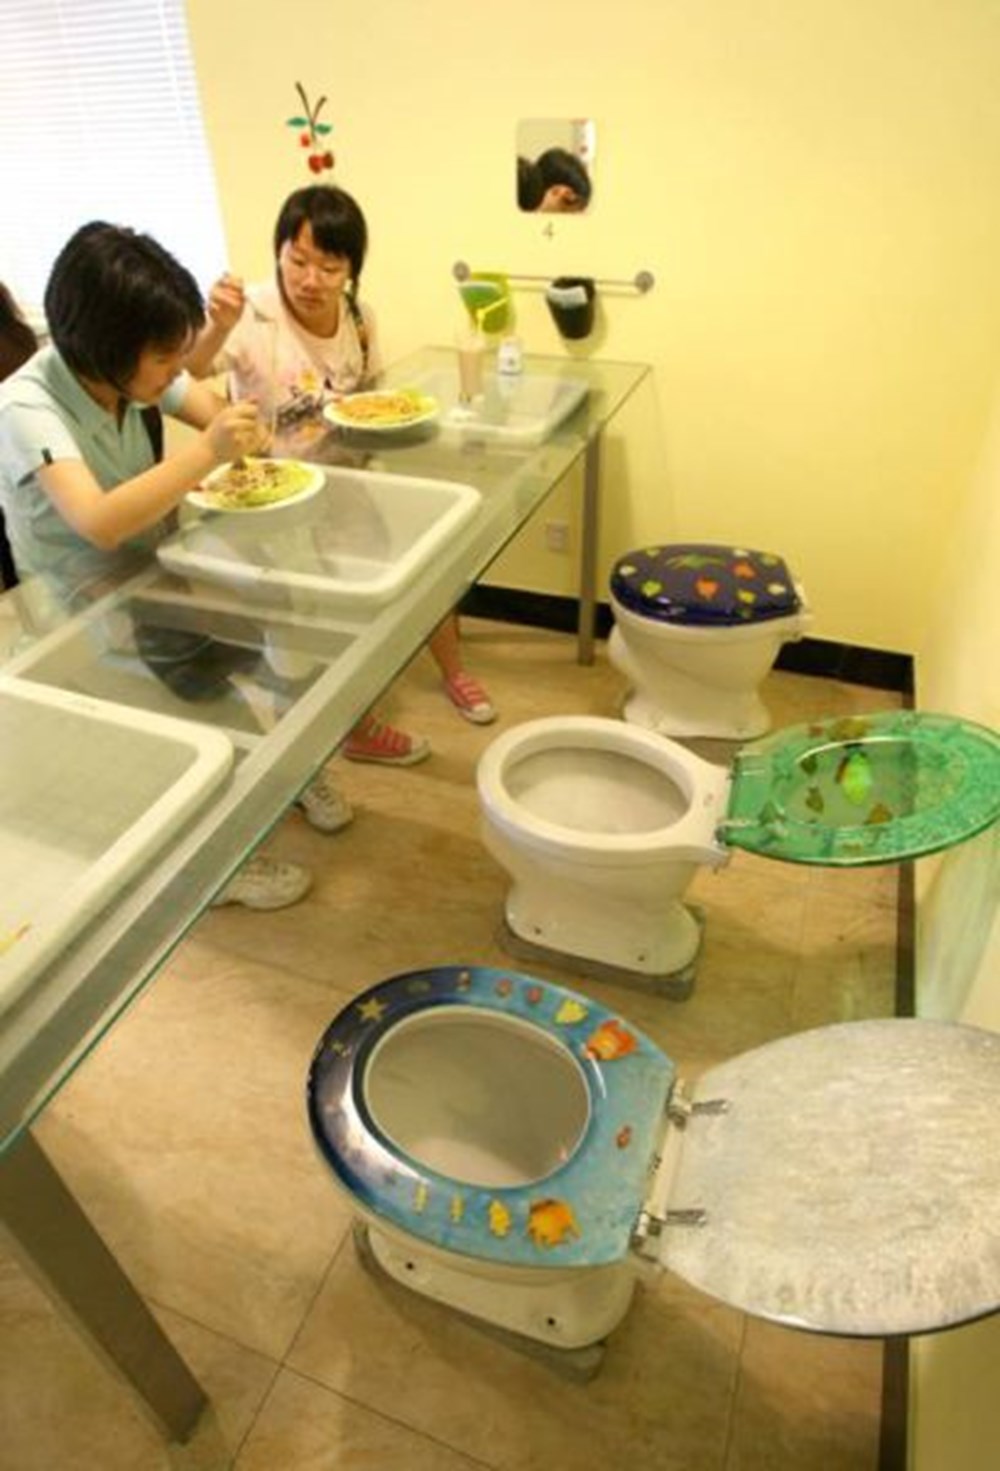 общественные туалеты в китае